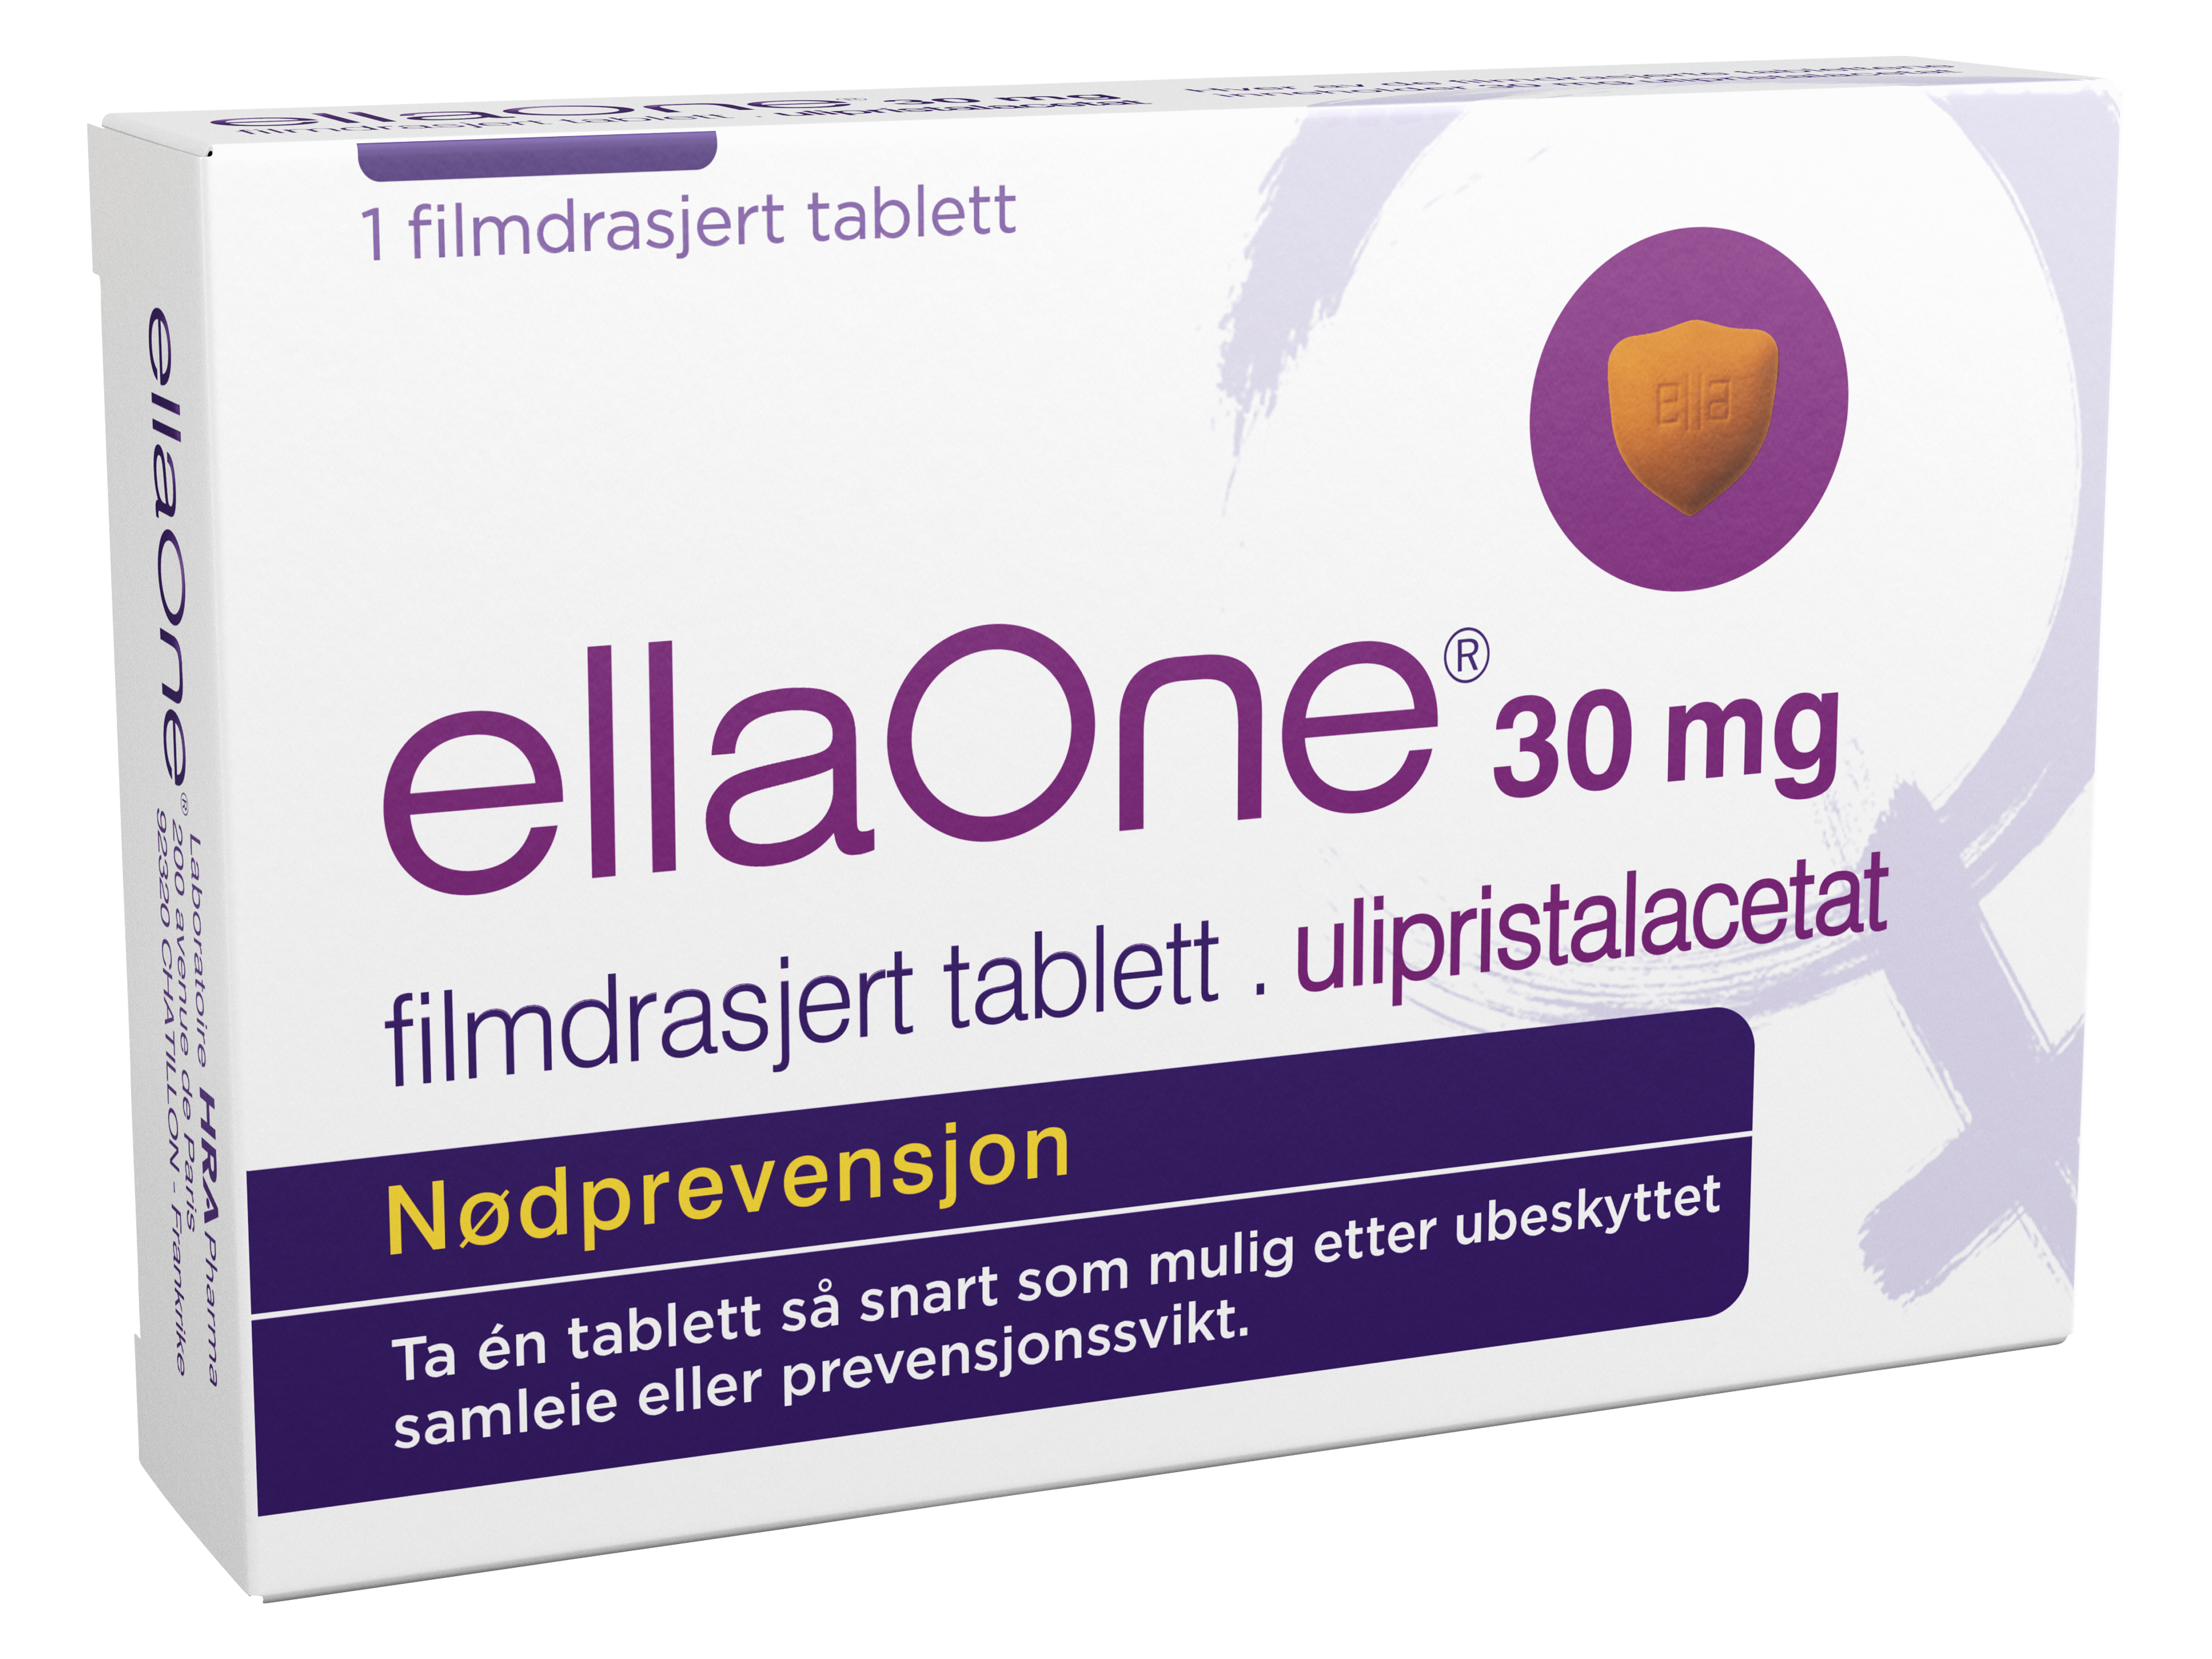 EllaOne 30 mg tablett, 1 stk.